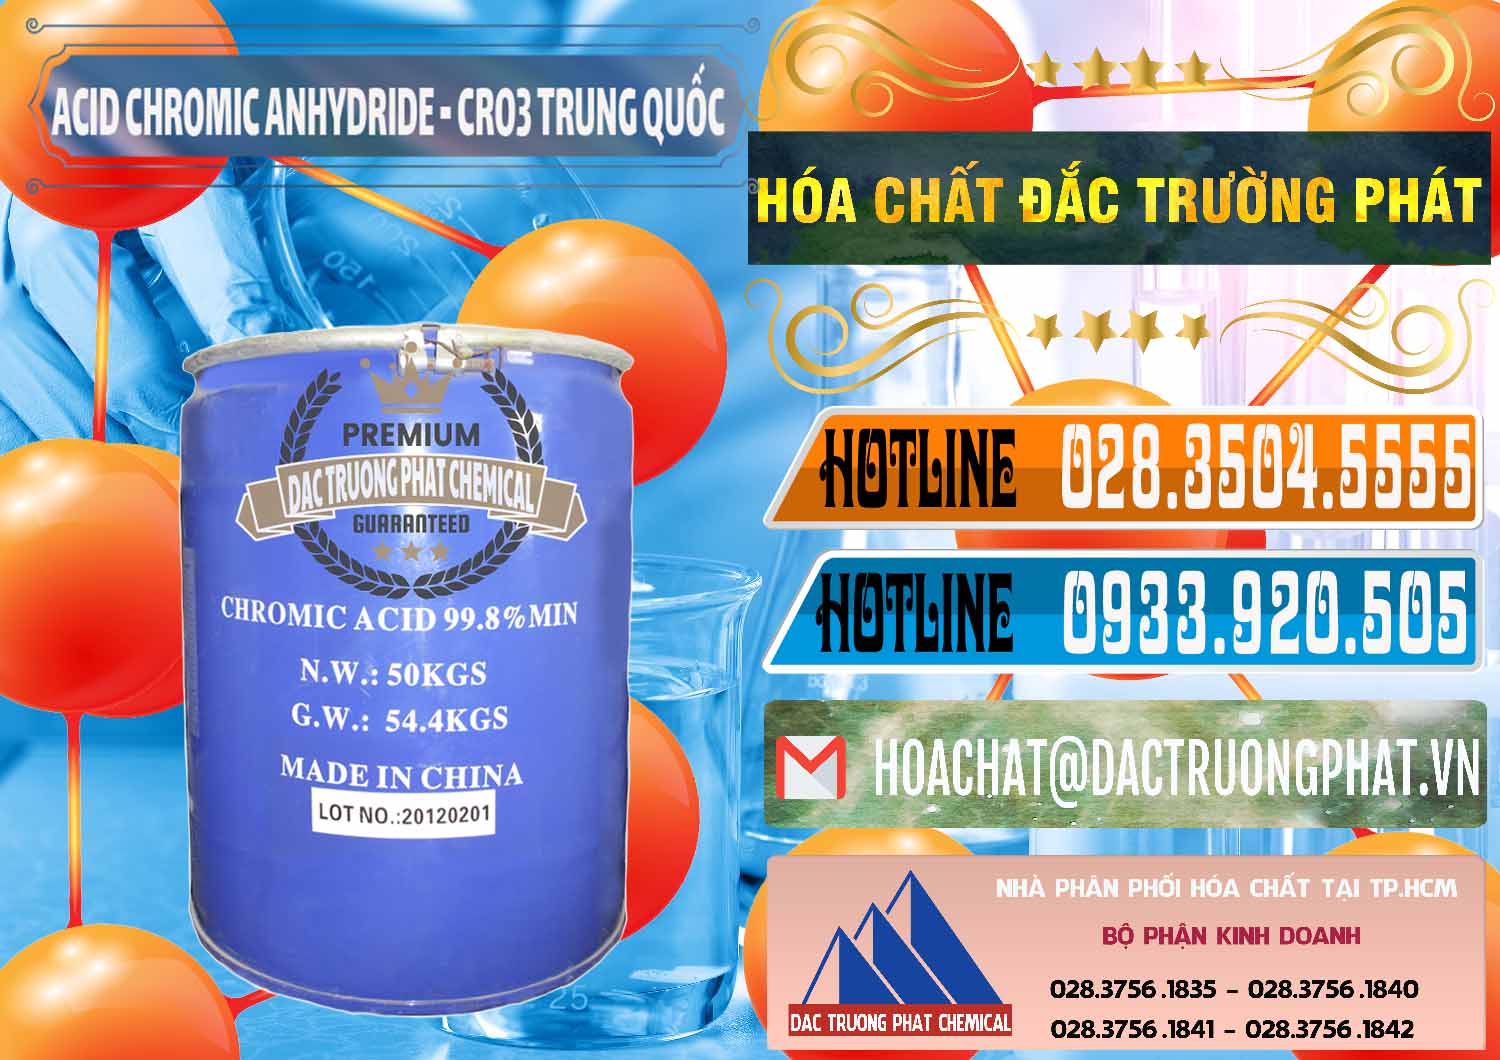 Đơn vị chuyên nhập khẩu - bán Acid Chromic Anhydride - Cromic CRO3 Trung Quốc China - 0007 - Chuyên nhập khẩu - cung cấp hóa chất tại TP.HCM - stmp.net